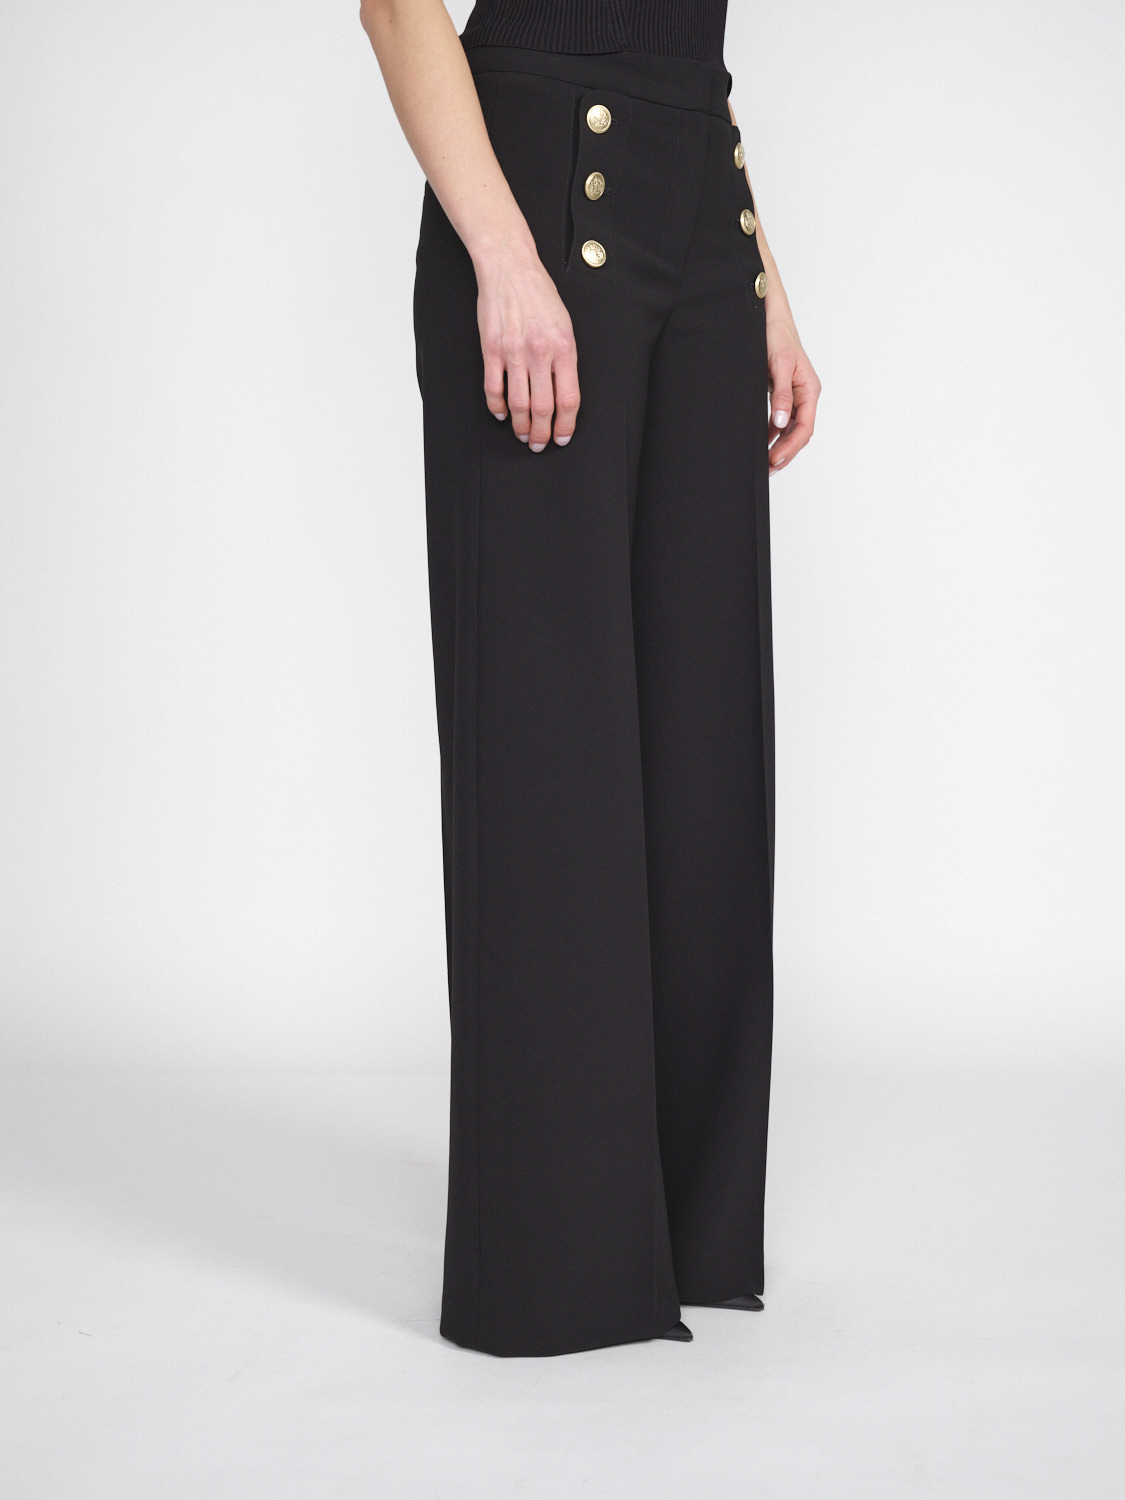 Seductive Bridget – Stretchige Hose mit goldfarbenen Knopfdetails   schwarz 38